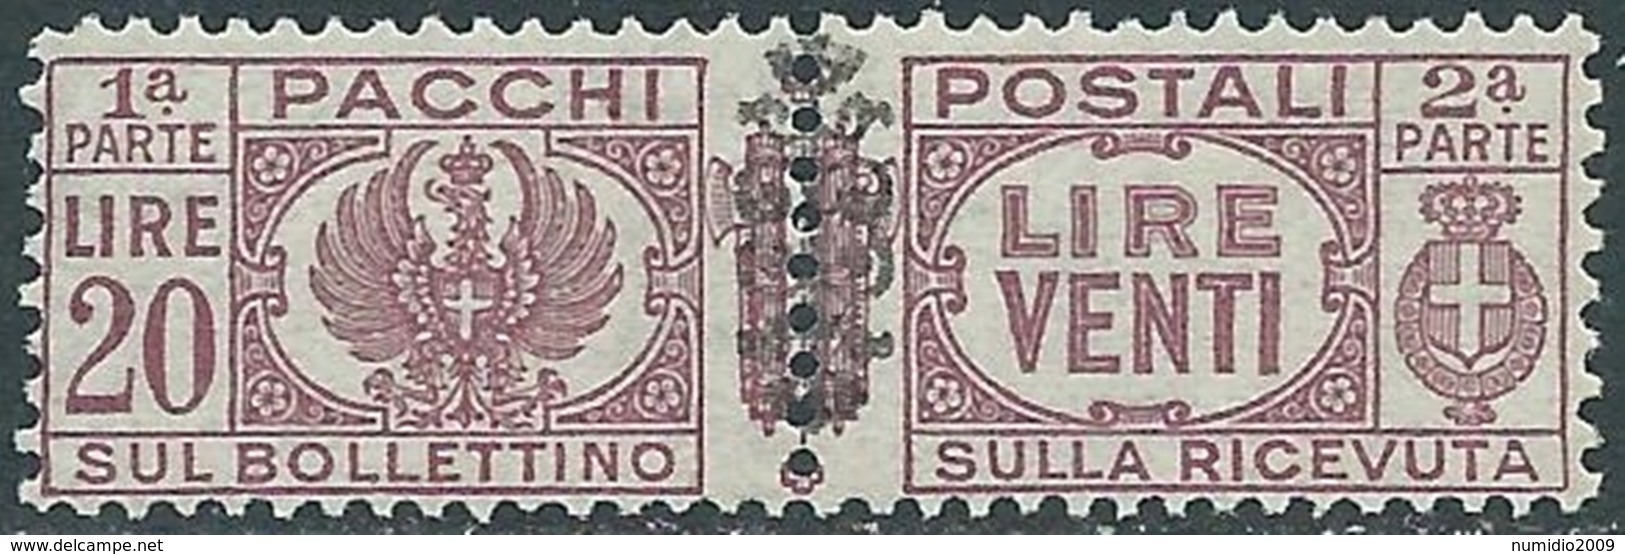 1945 LUOGOTENENZA PACCHI POSTALI 20 LIRE MNH ** - RB14-6 - Postal Parcels